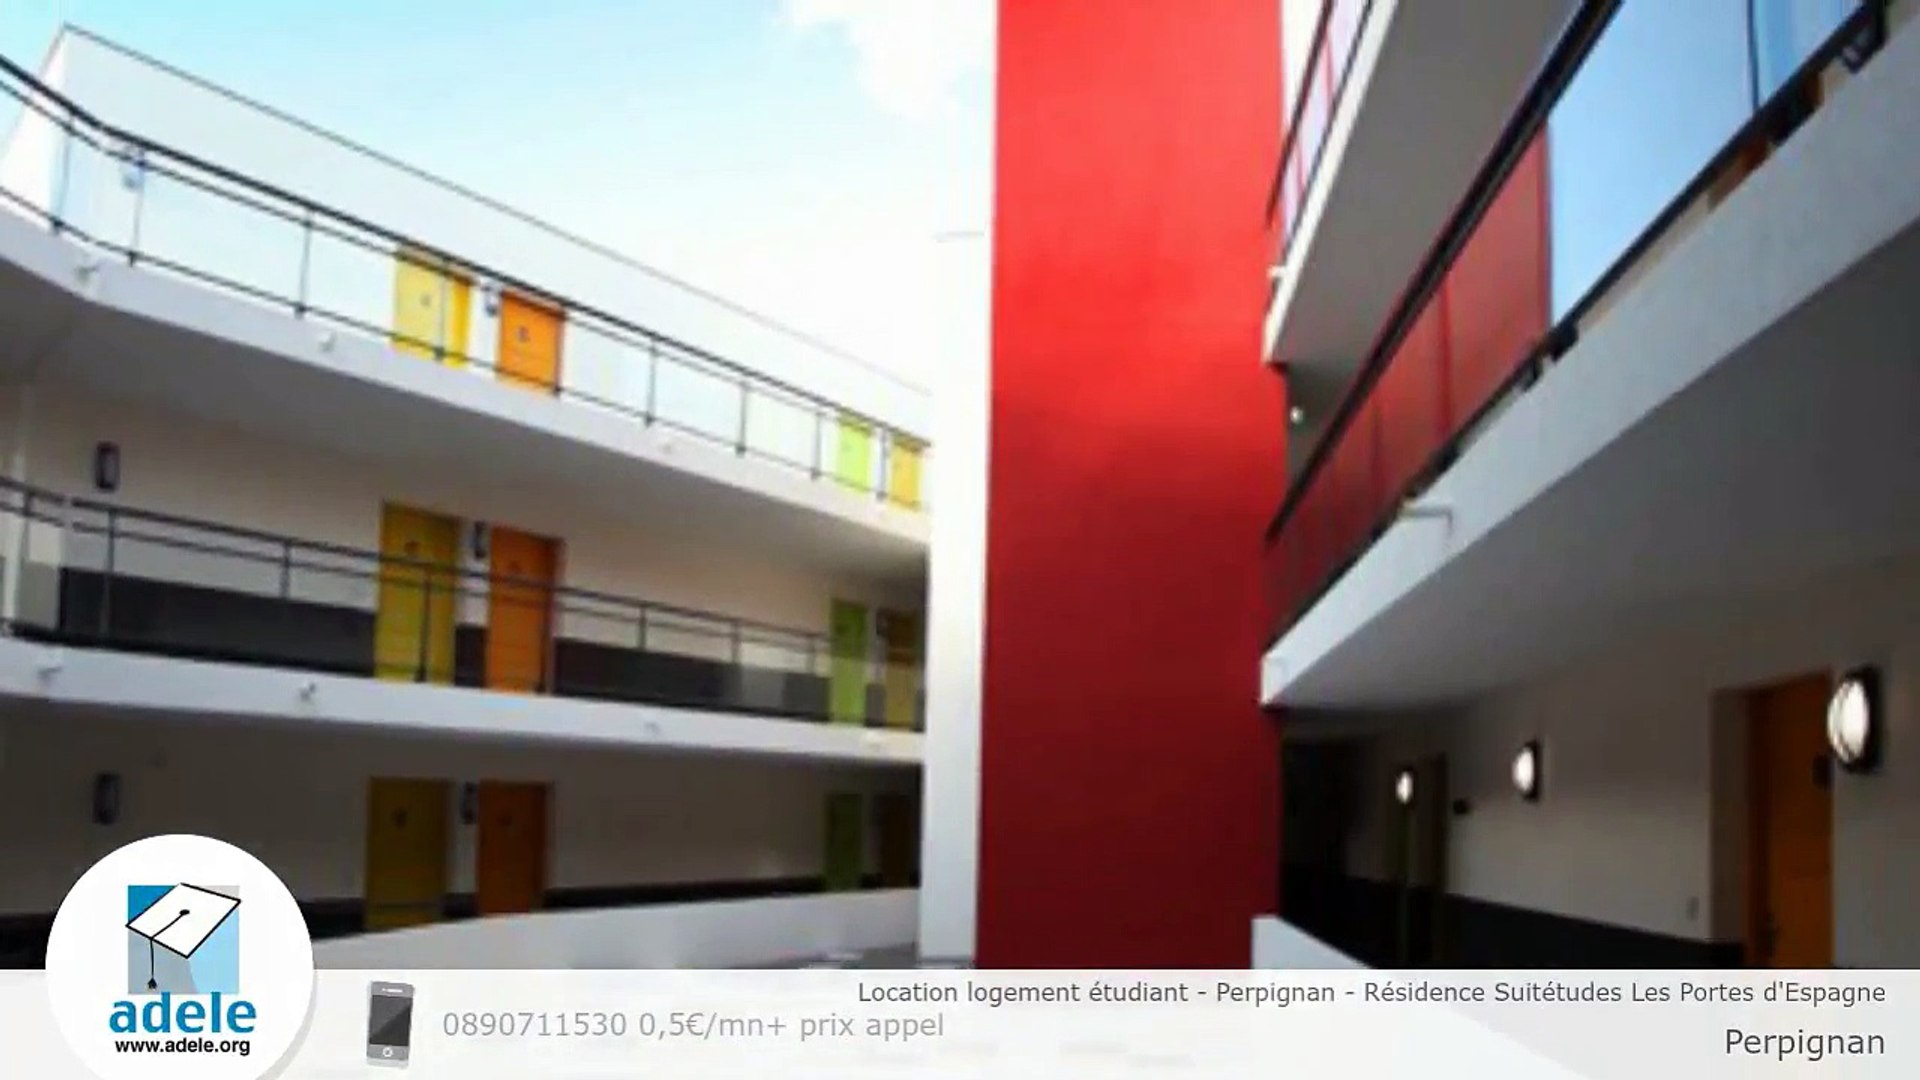 Location logement étudiant - Perpignan - Résidence Suitétudes Les Portes  d'Espagne - Vidéo Dailymotion